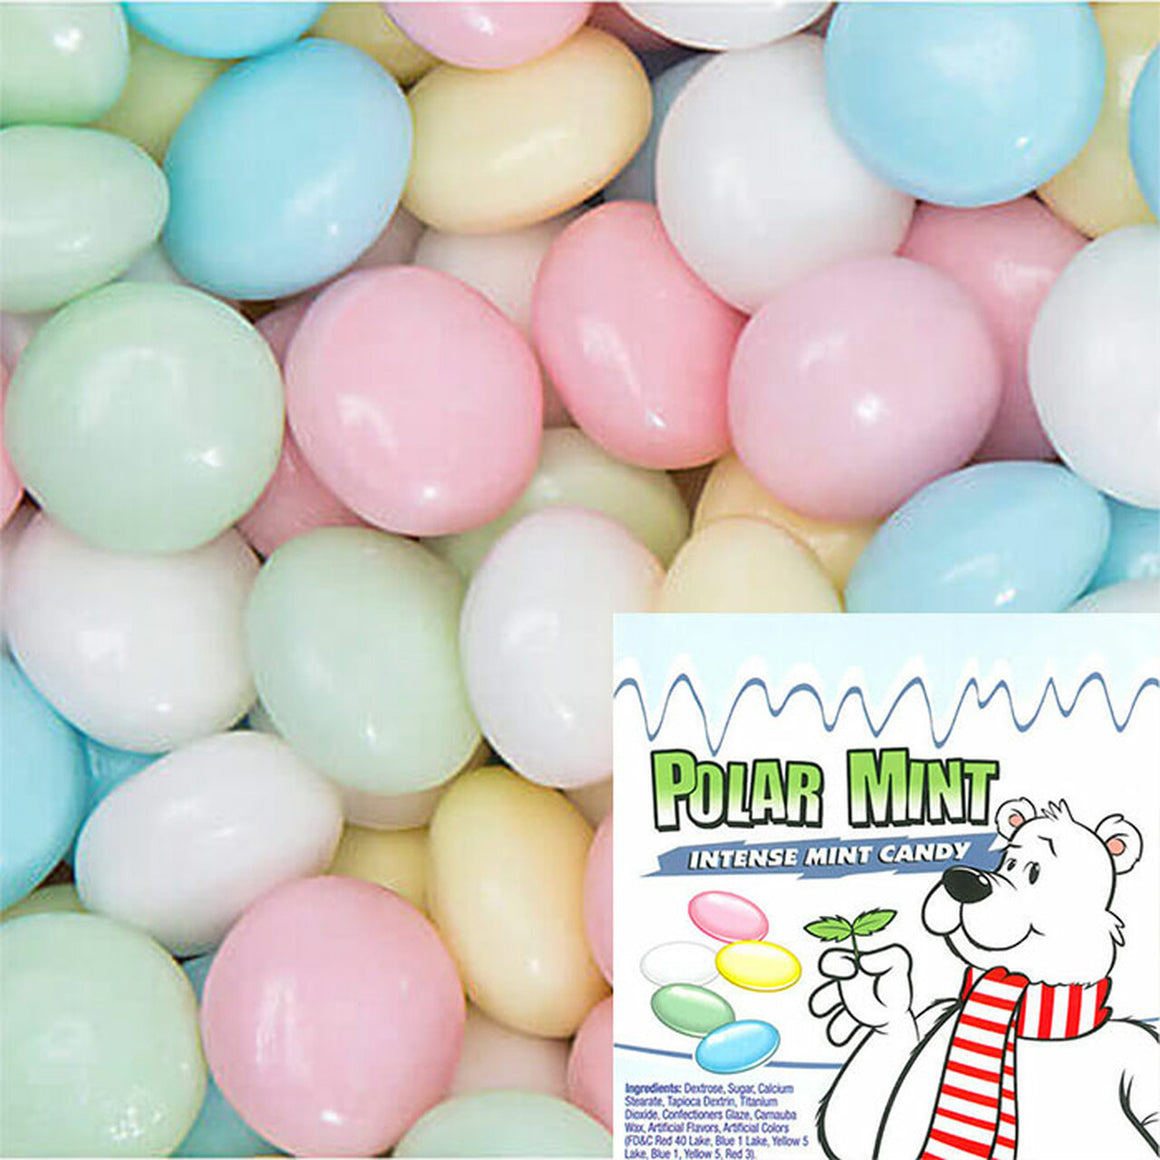 Mini Misty Mints - Nonpareils 3 lb. Bulk Bag